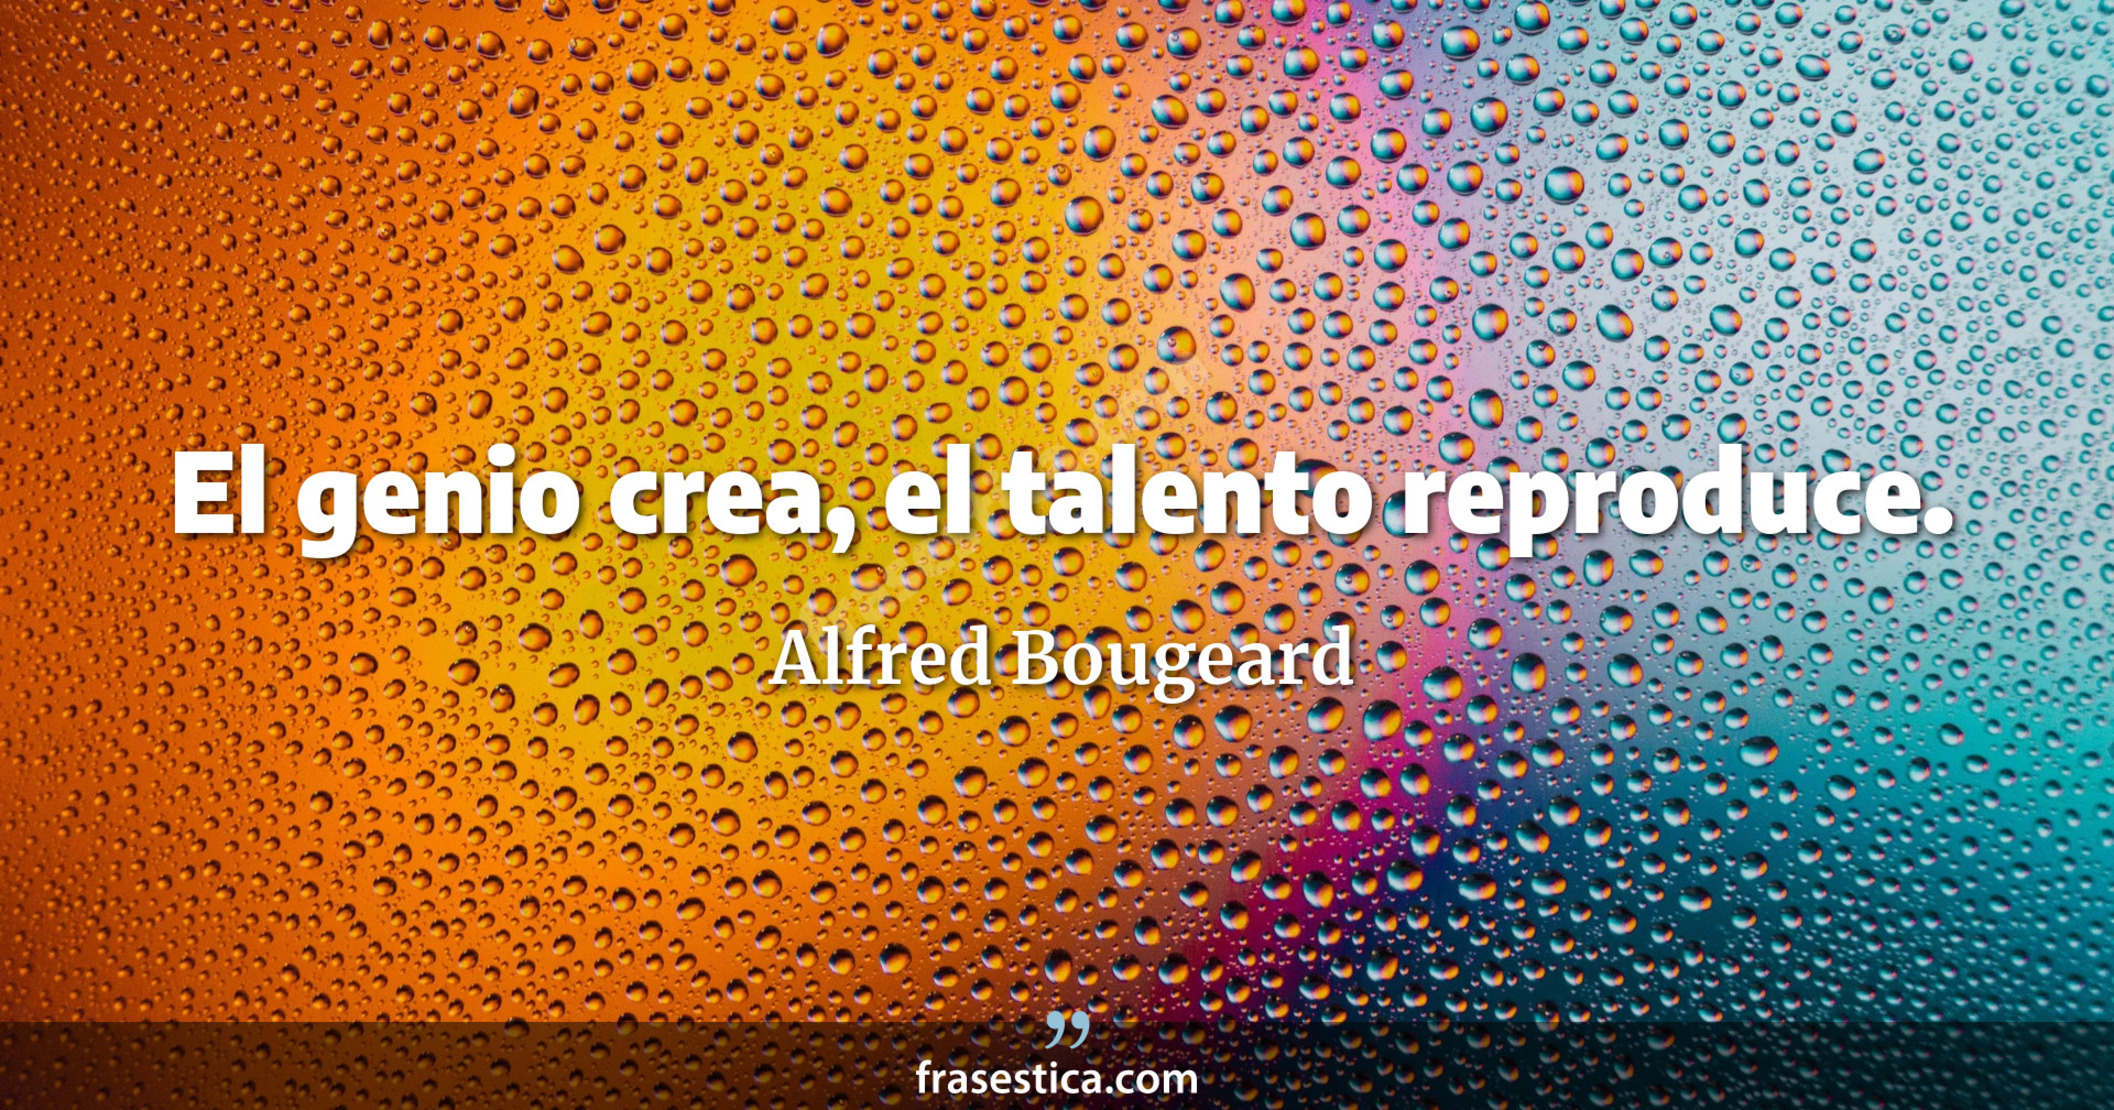 El genio crea, el talento reproduce. - Alfred Bougeard